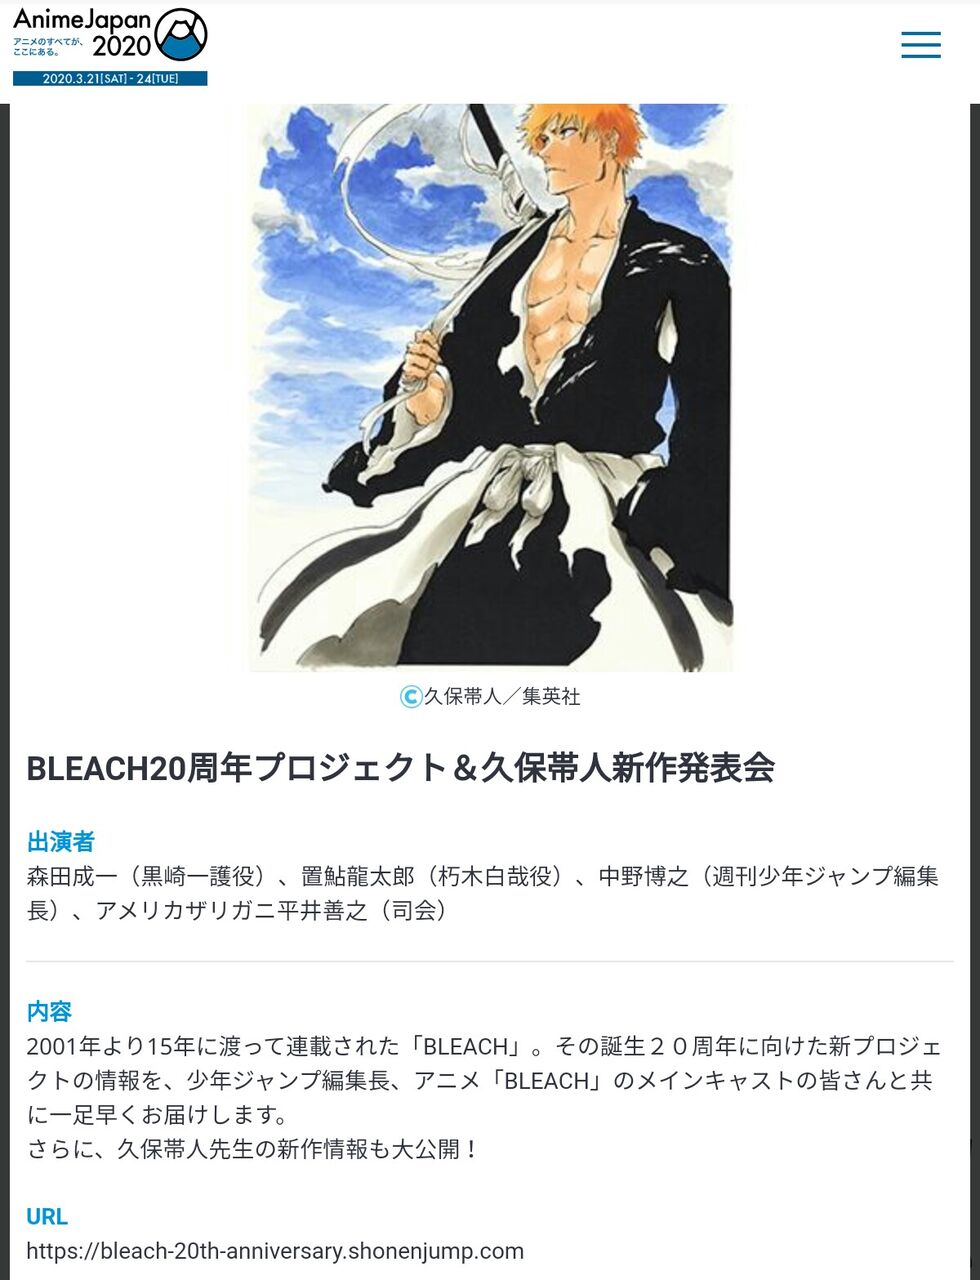 Bleachの久保帯人先生 新作発表へ Bleach周年記念サイトもオープン 名言とポエムがかっこいい漫画だったな 色々まとめ速報